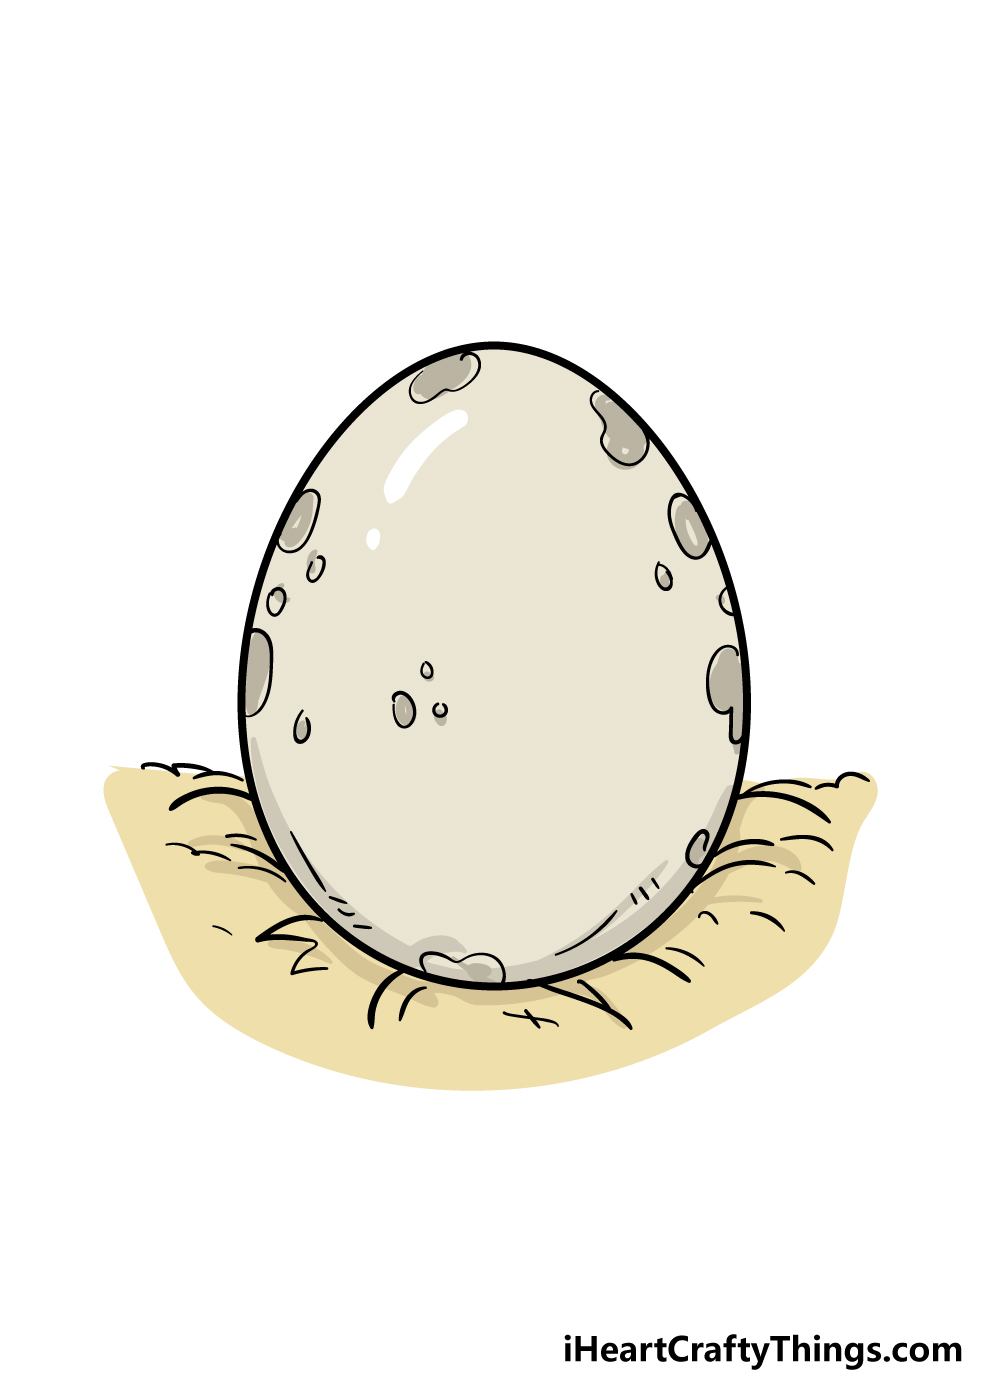 7 3 - Hướng dẫn cách vẽ quả trứng đơn giản và giản dị với 7 bước cơ bản